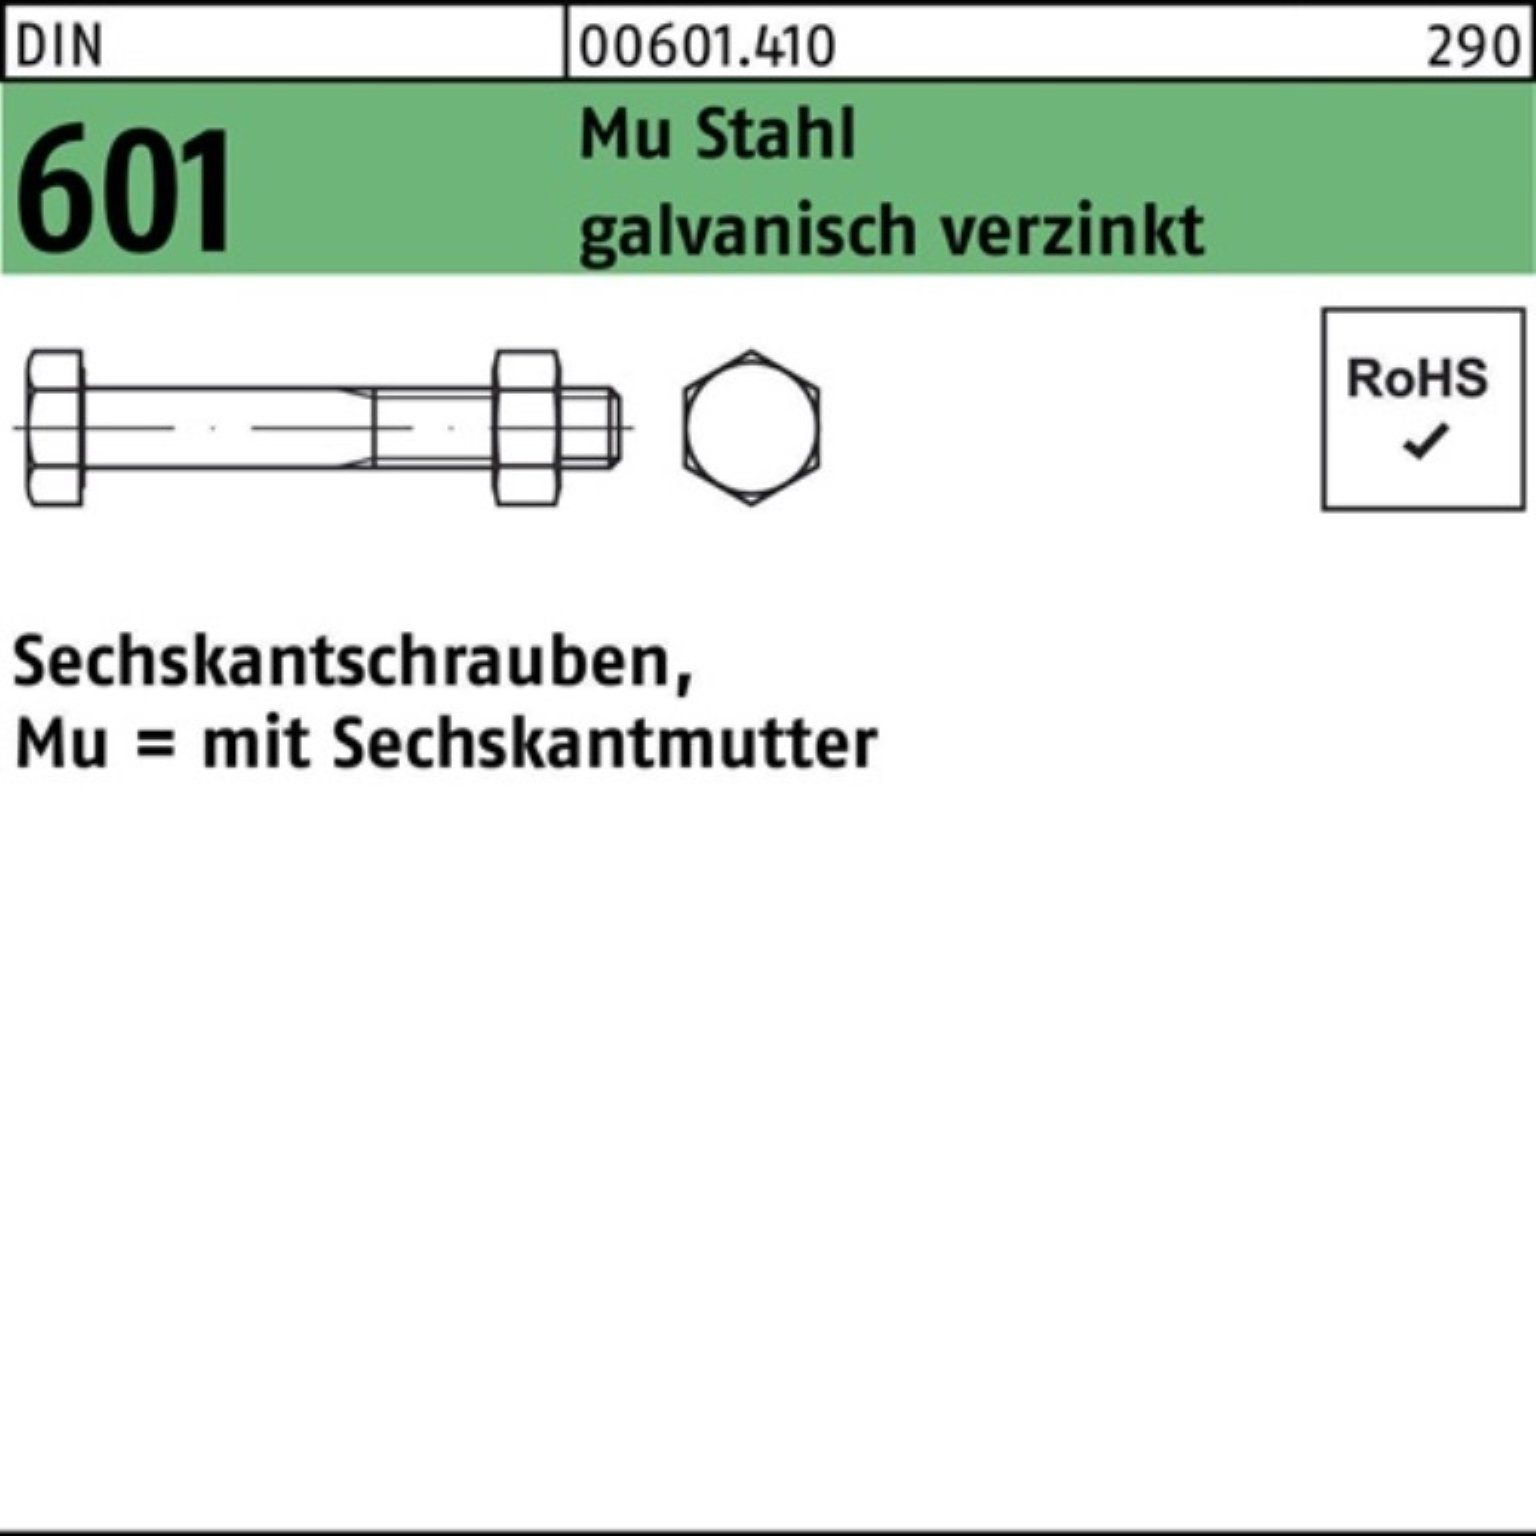 Reyher Sechskantmutter 200er Pack Sechskantschraube DIN 601 Sechskantmutter M6x60 Mu Stahl 4.